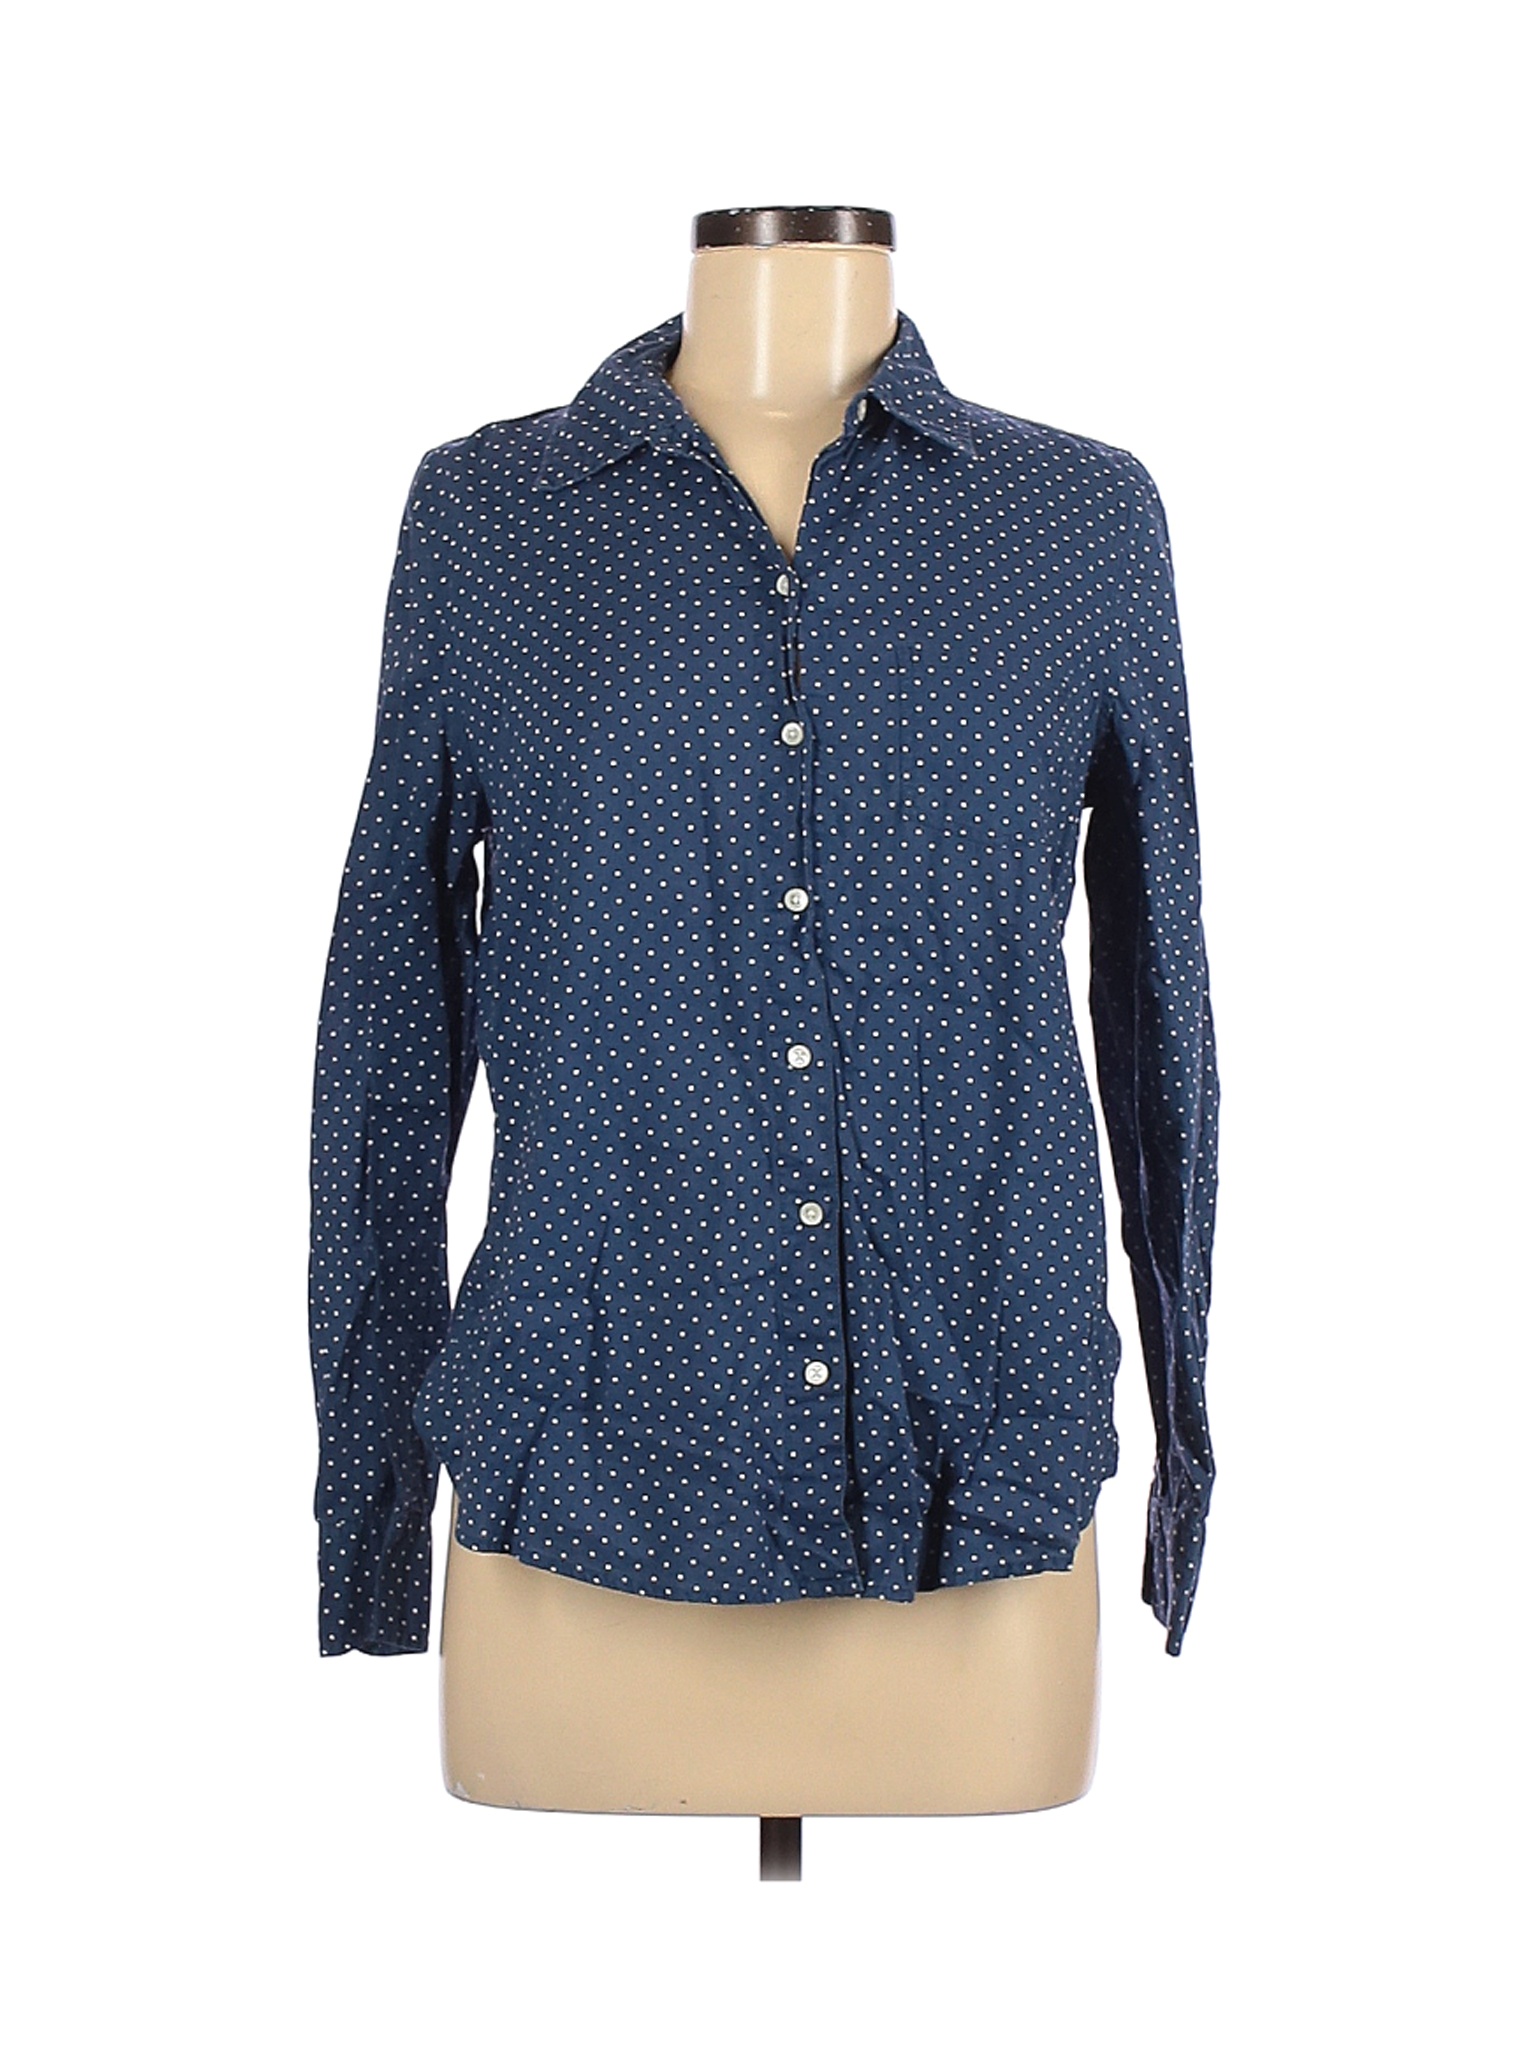 Gap Women Blue Long Sleeve Button-Down Shirt M | eBay